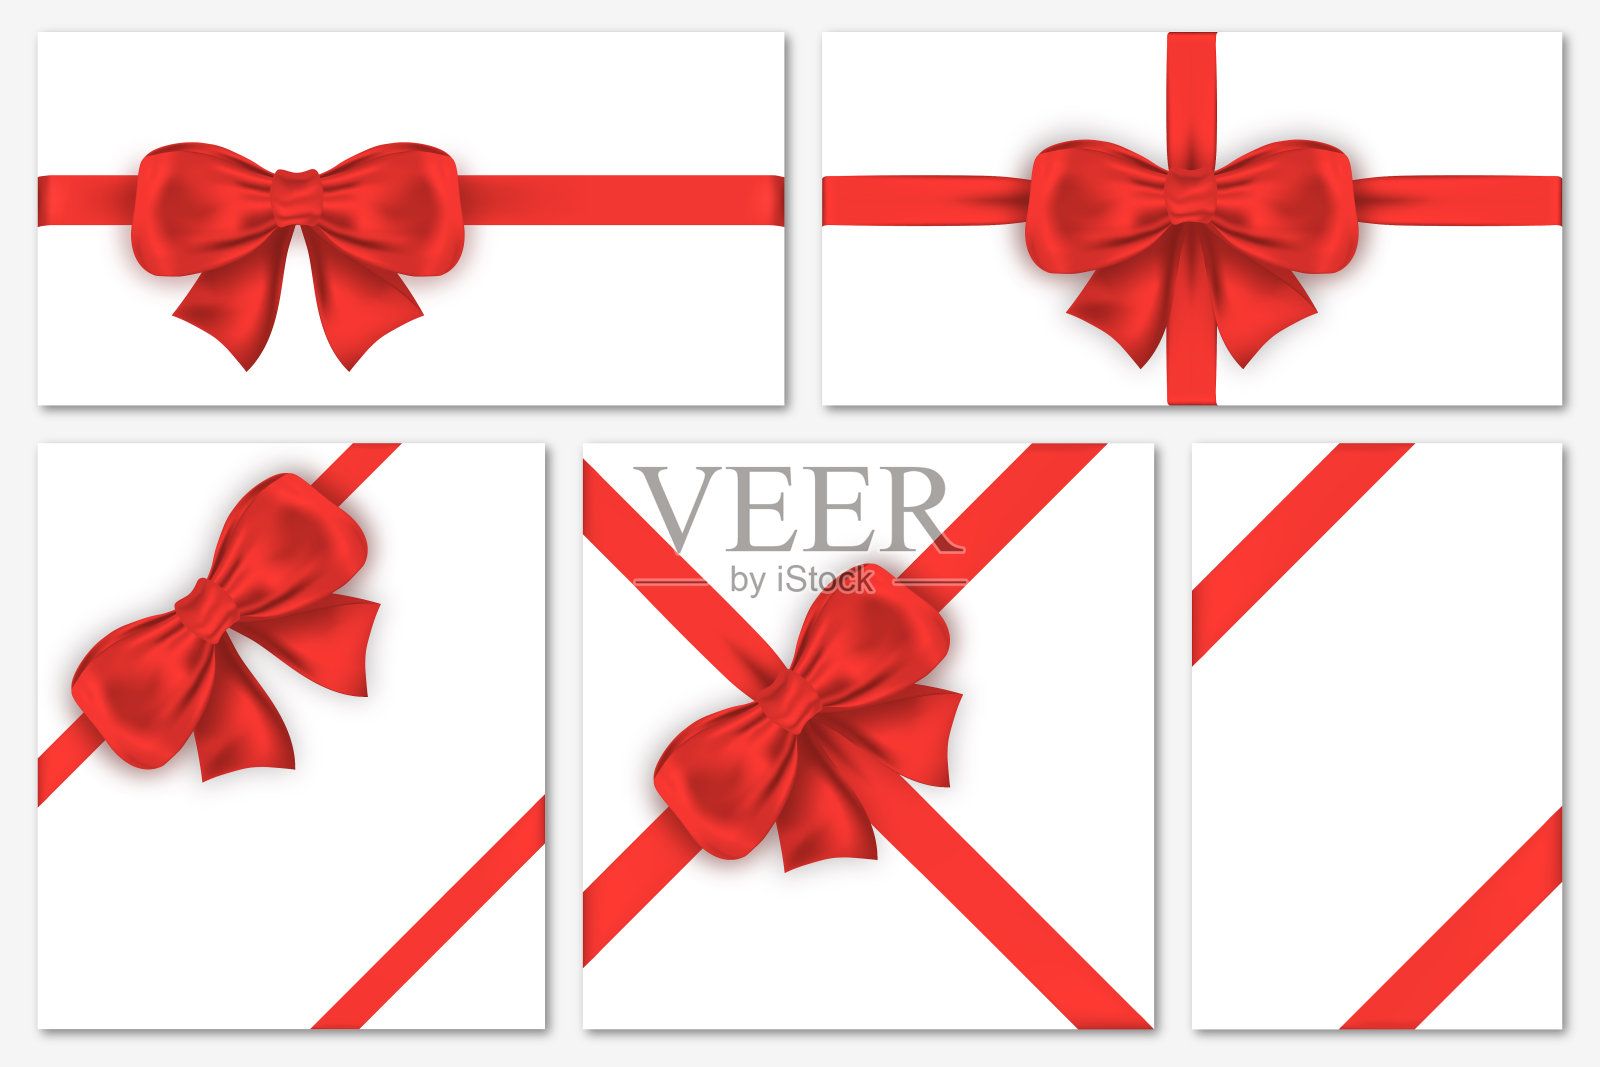 一套豪华的红色蝴蝶结礼品卡。装饰礼物蝴蝶结缎带包装，框架，横幅，邀请设计元素图片